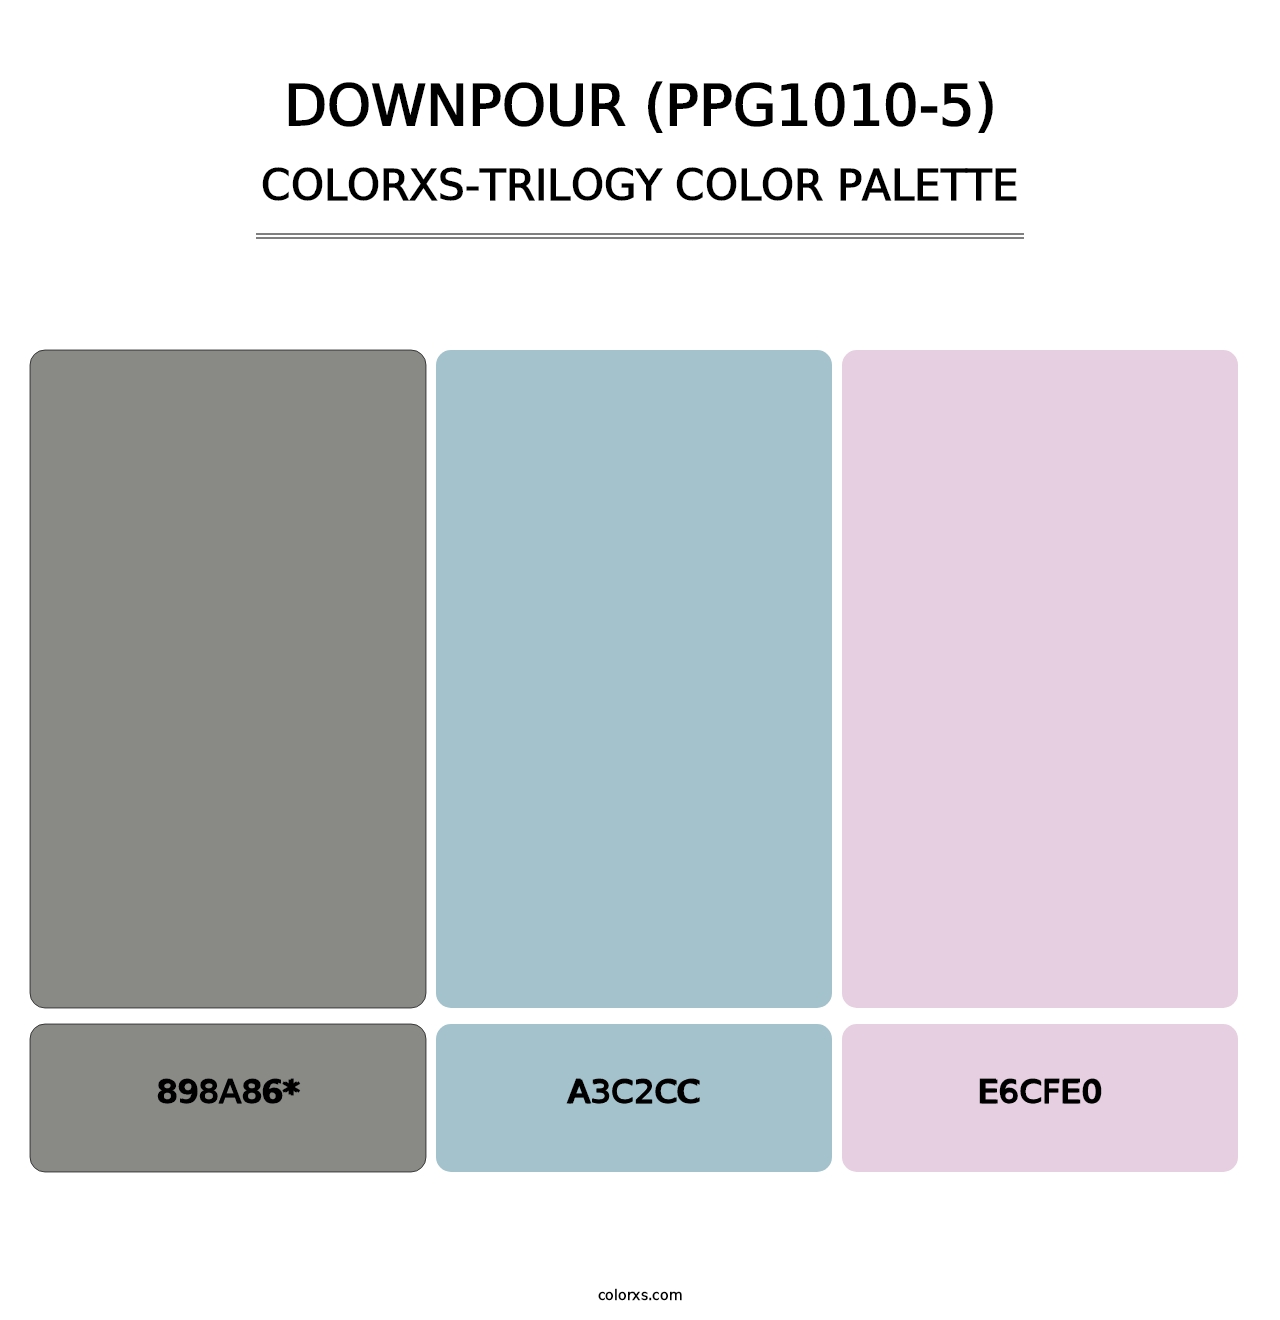 Downpour (PPG1010-5) - Colorxs Trilogy Palette